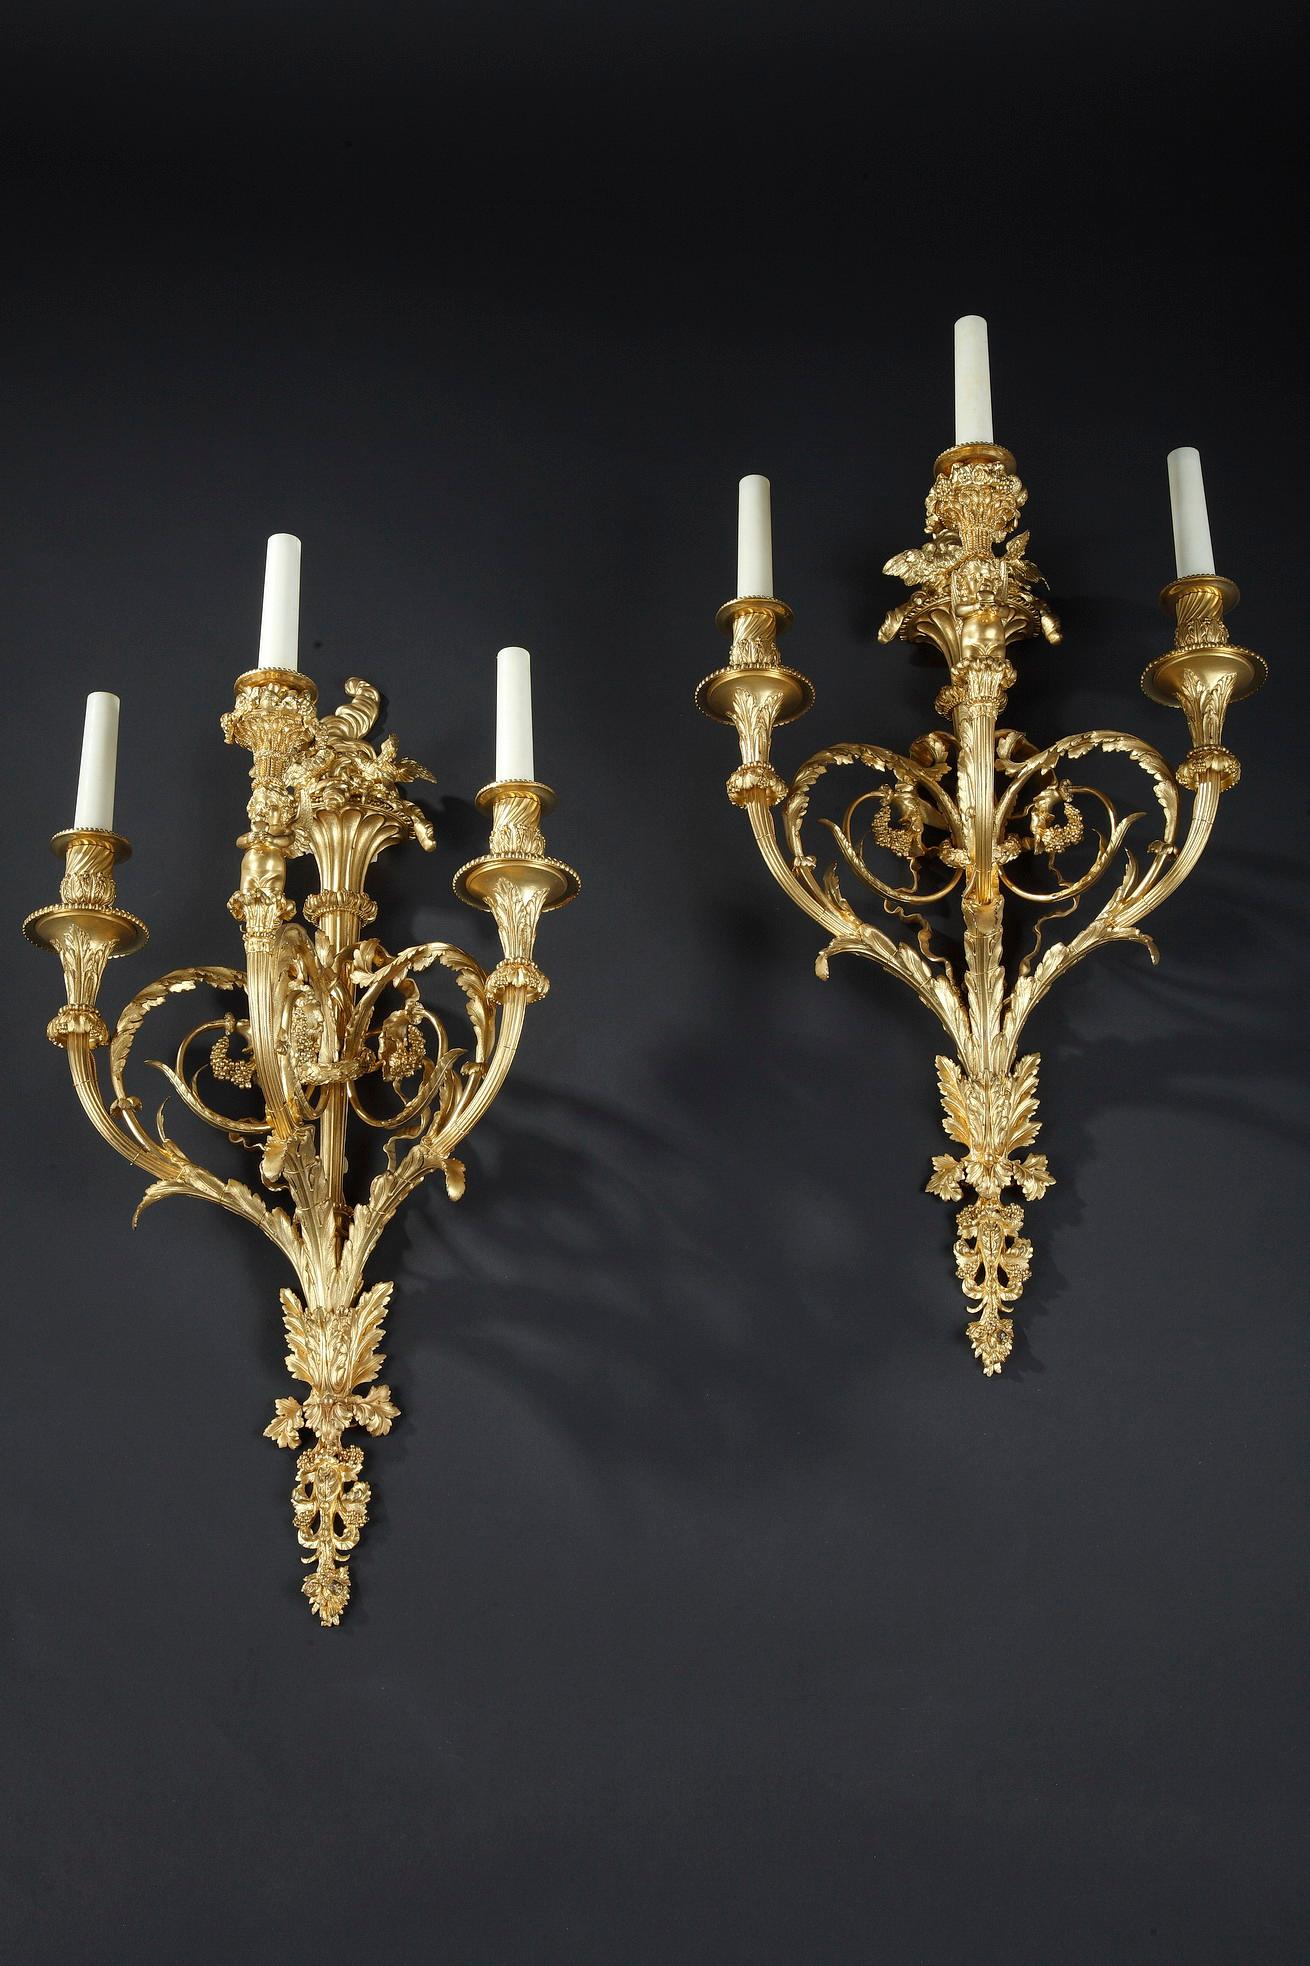 Elegantes Paar dreiflammiger Wandleuchter im Louis XVI-Stil aus gemeißelter und vergoldeter Bronze, signiert Denière.
Die in Arabesken angeordneten Zweige aus Blattwerk sind durch eine Girlande und eine Bandschleife mit dem geriffelten Schaft